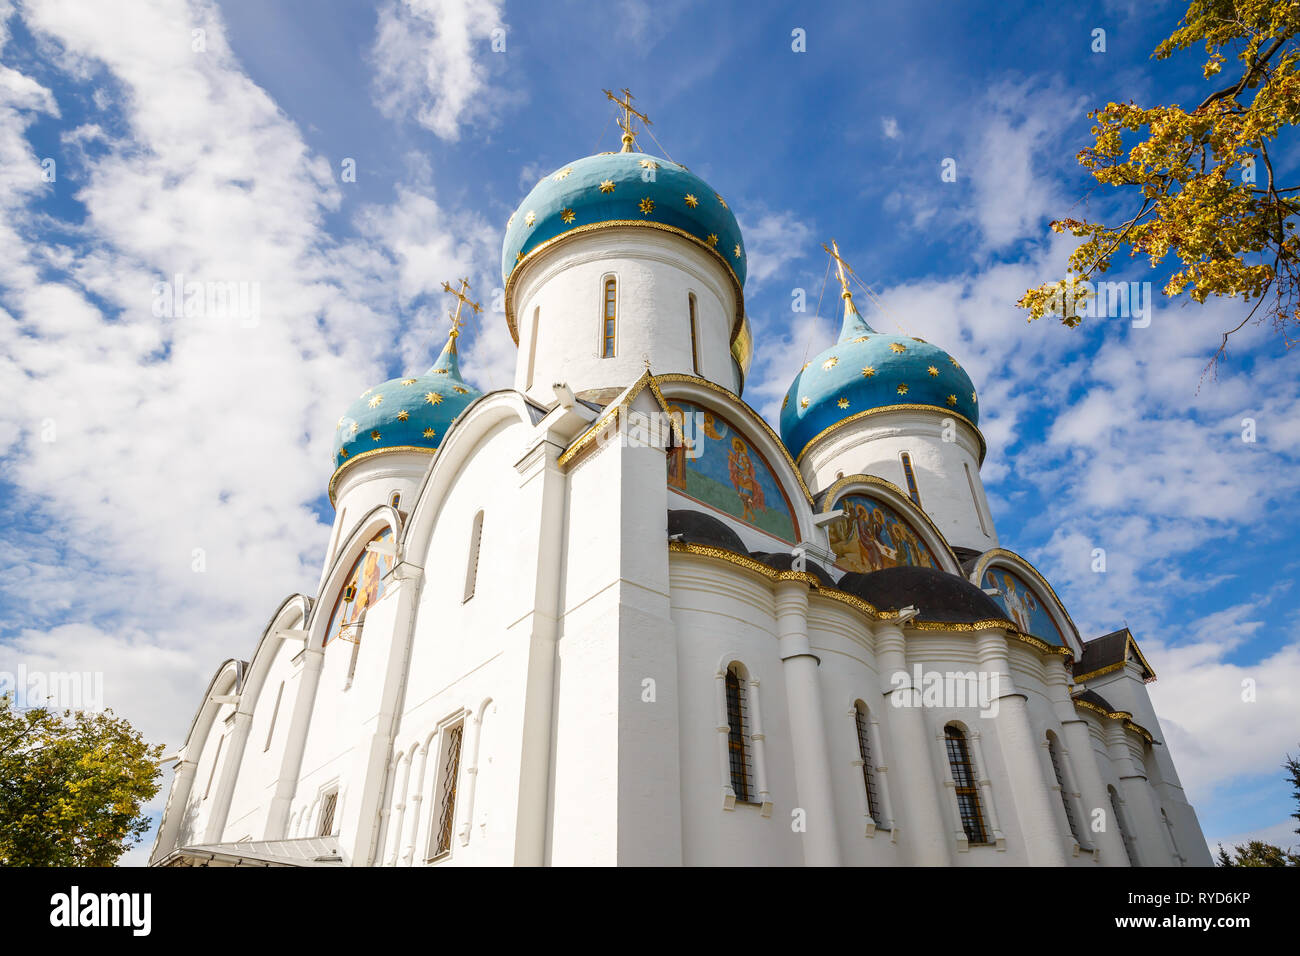 Die Kathedrale der Heiligen Dreifaltigkeit Lavra von St. Sergius in Sergiev Posad, Russland. Stockfoto